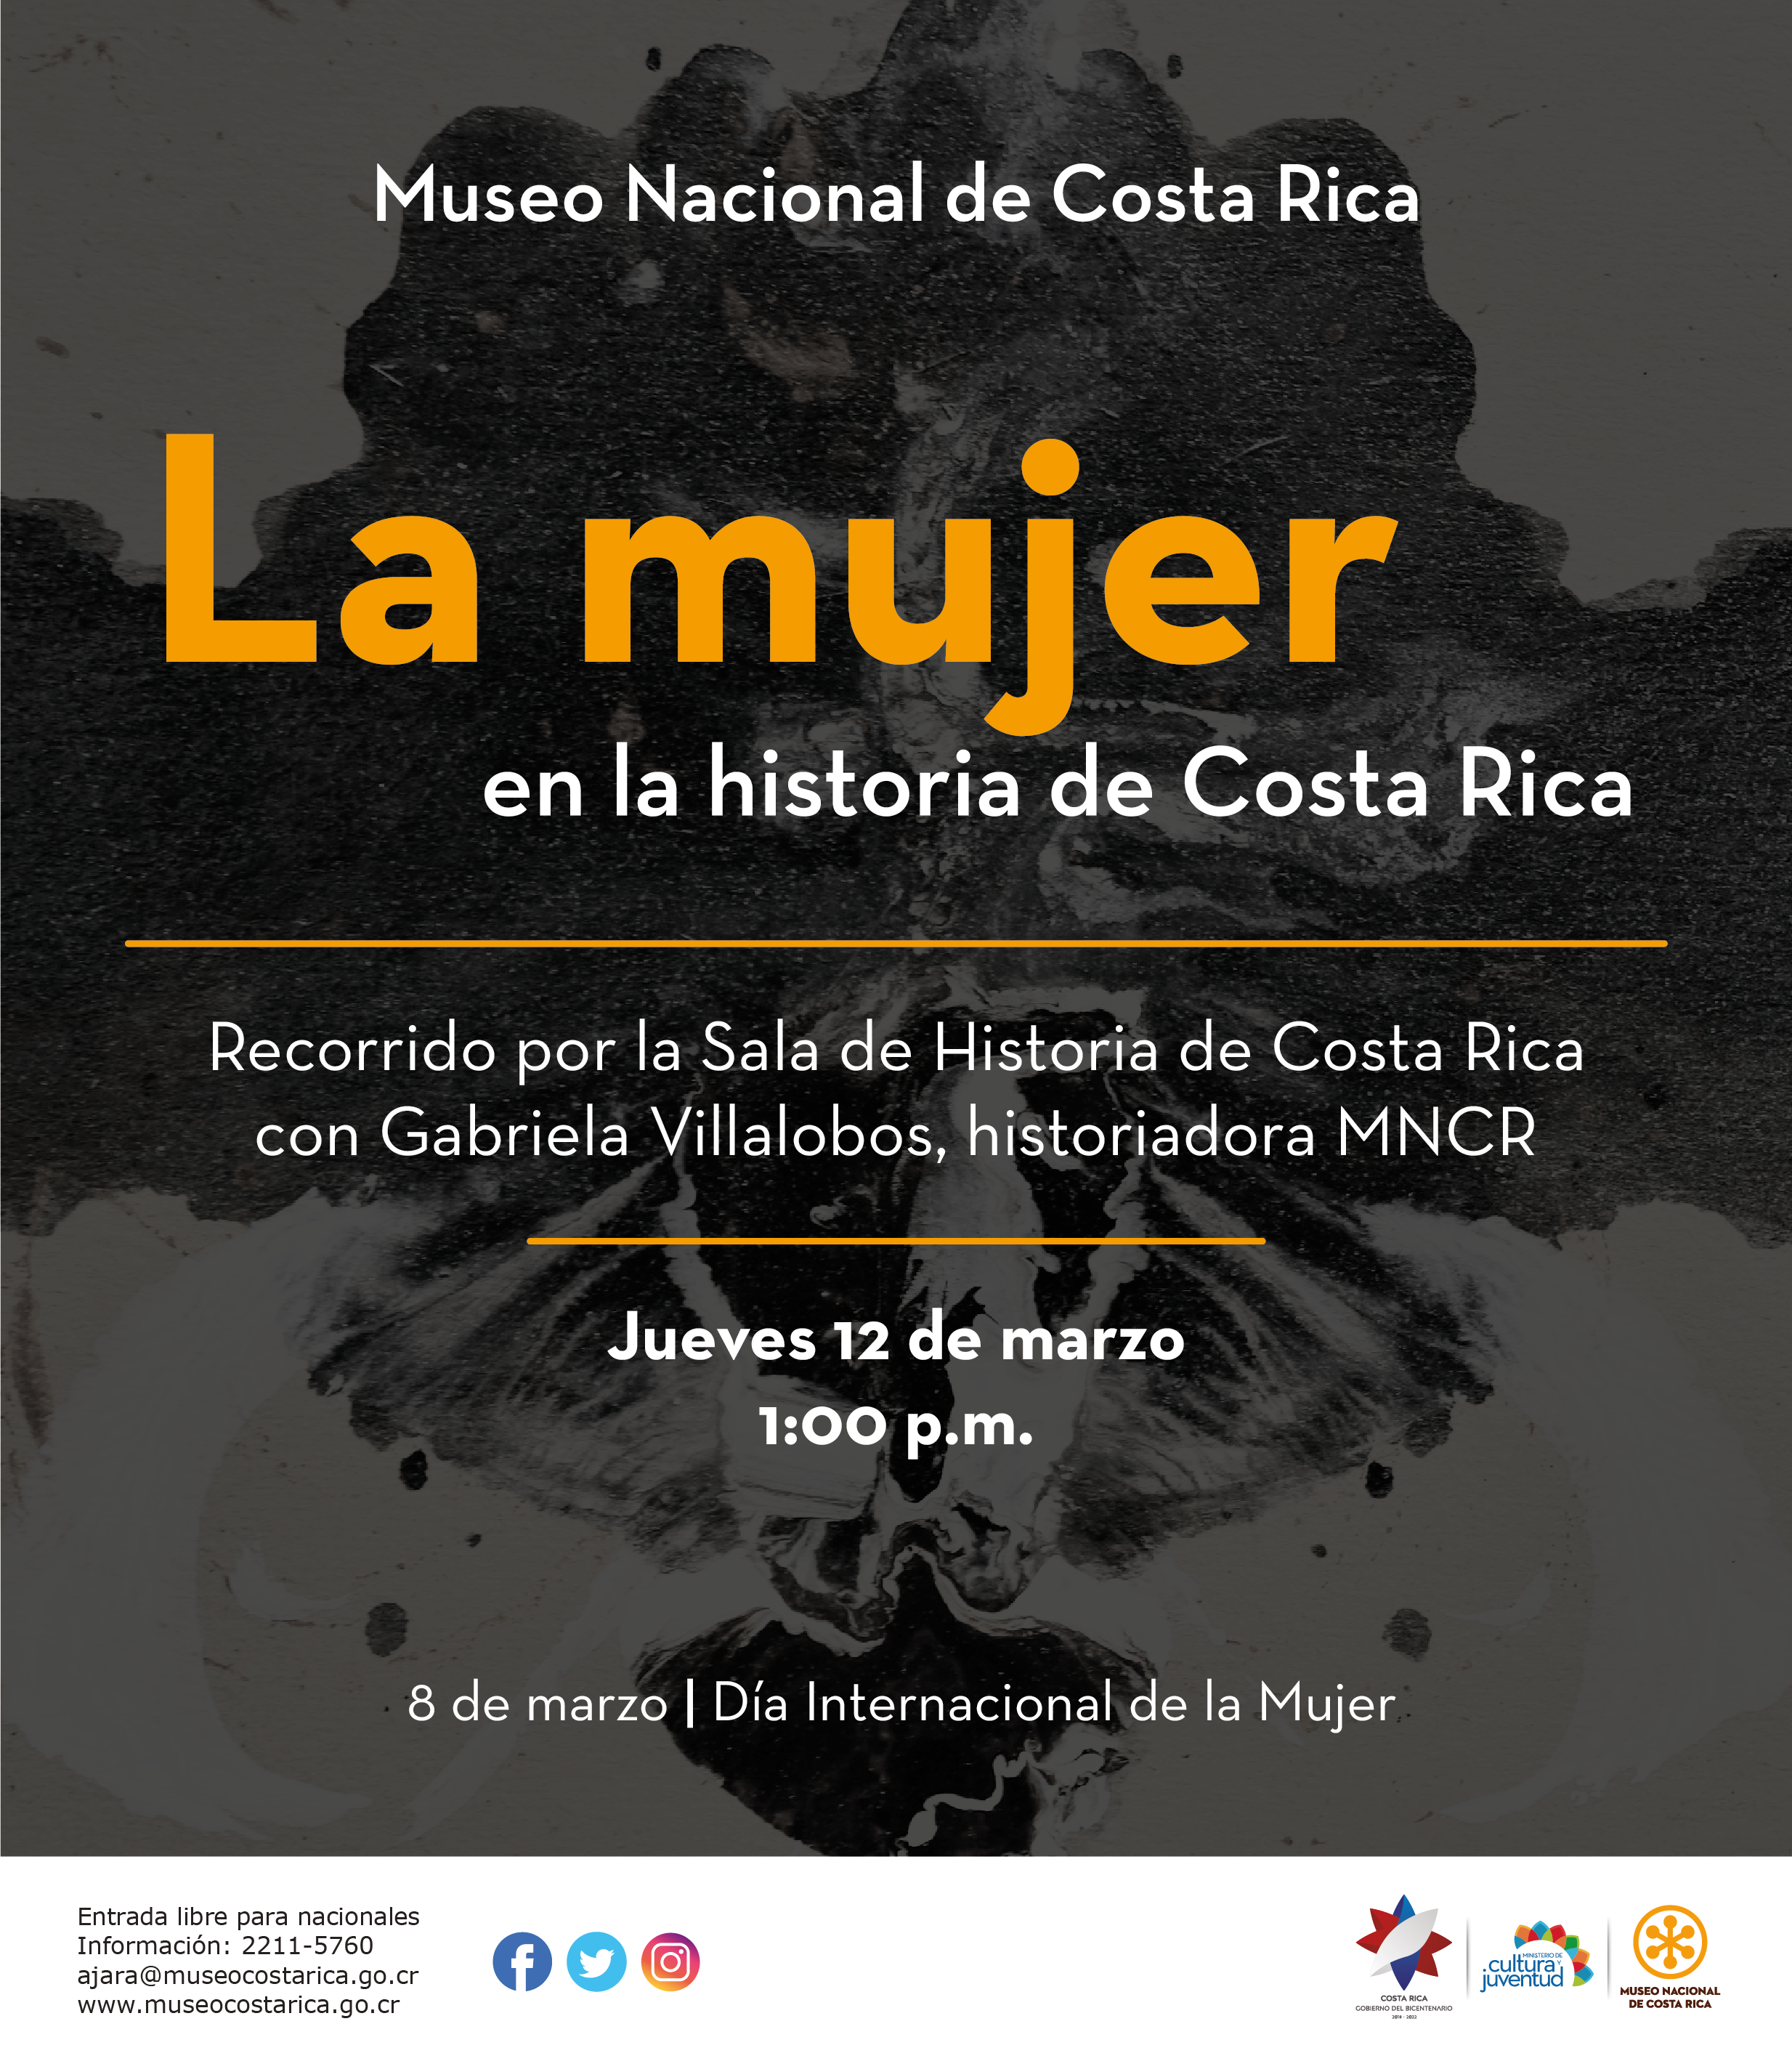 Visita guiada La mujer en la historia de Costa Rica. Jueves 12 de marzo, 1 p.m. Museo Nacional de Costa Rica.